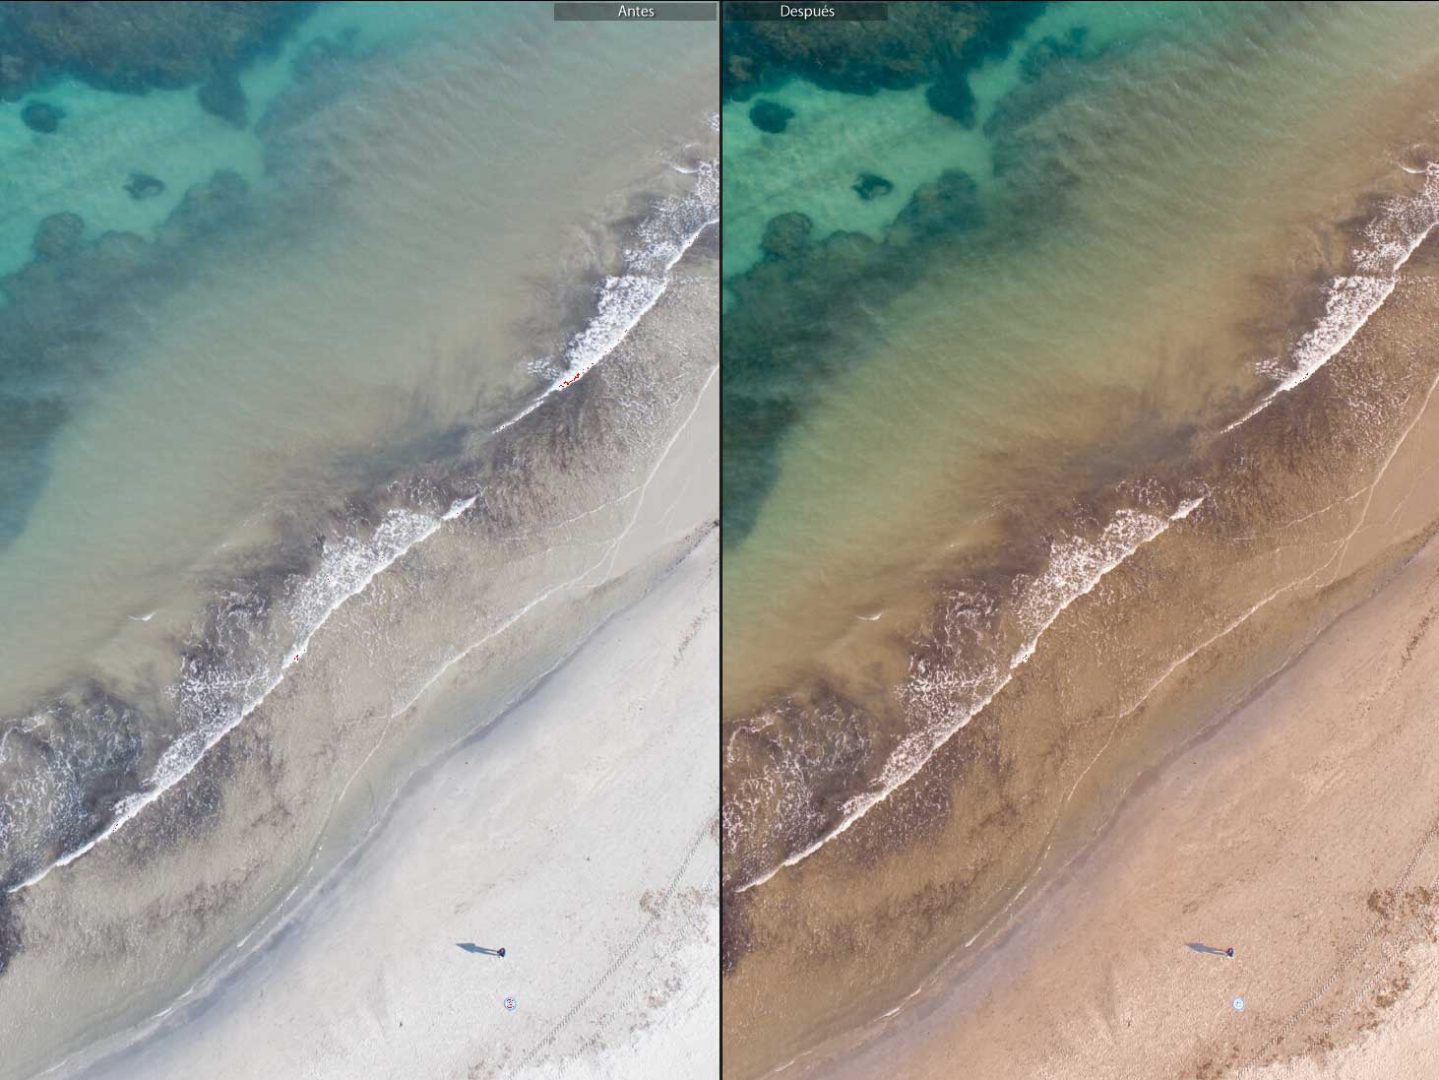 Revelado digital de una fotografía aérea con dron